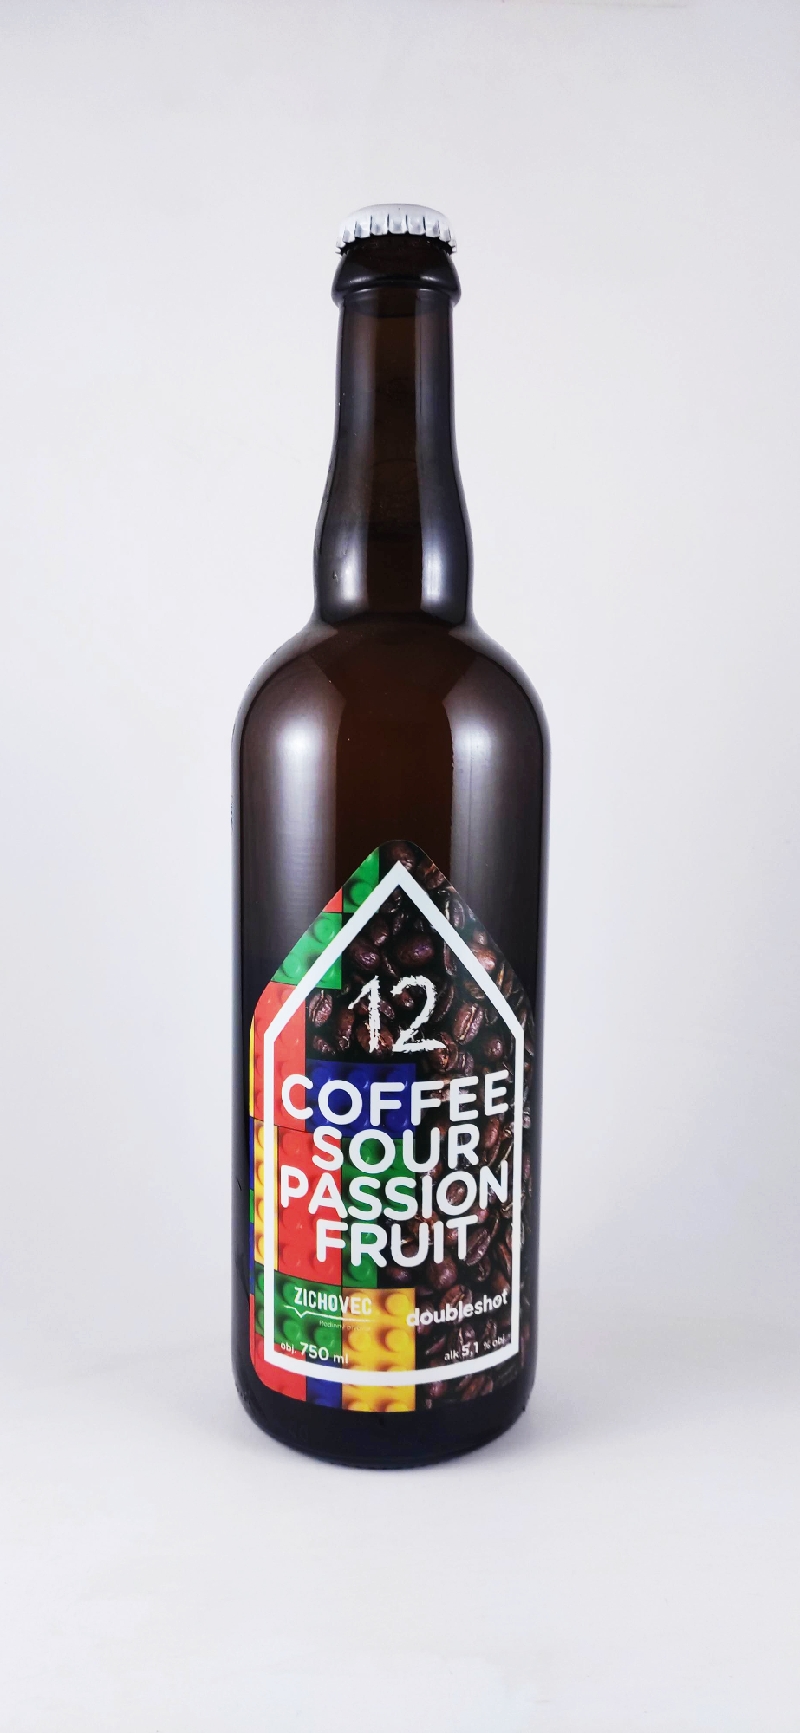 Zichovec Coffee Sour Passion fruit 12°